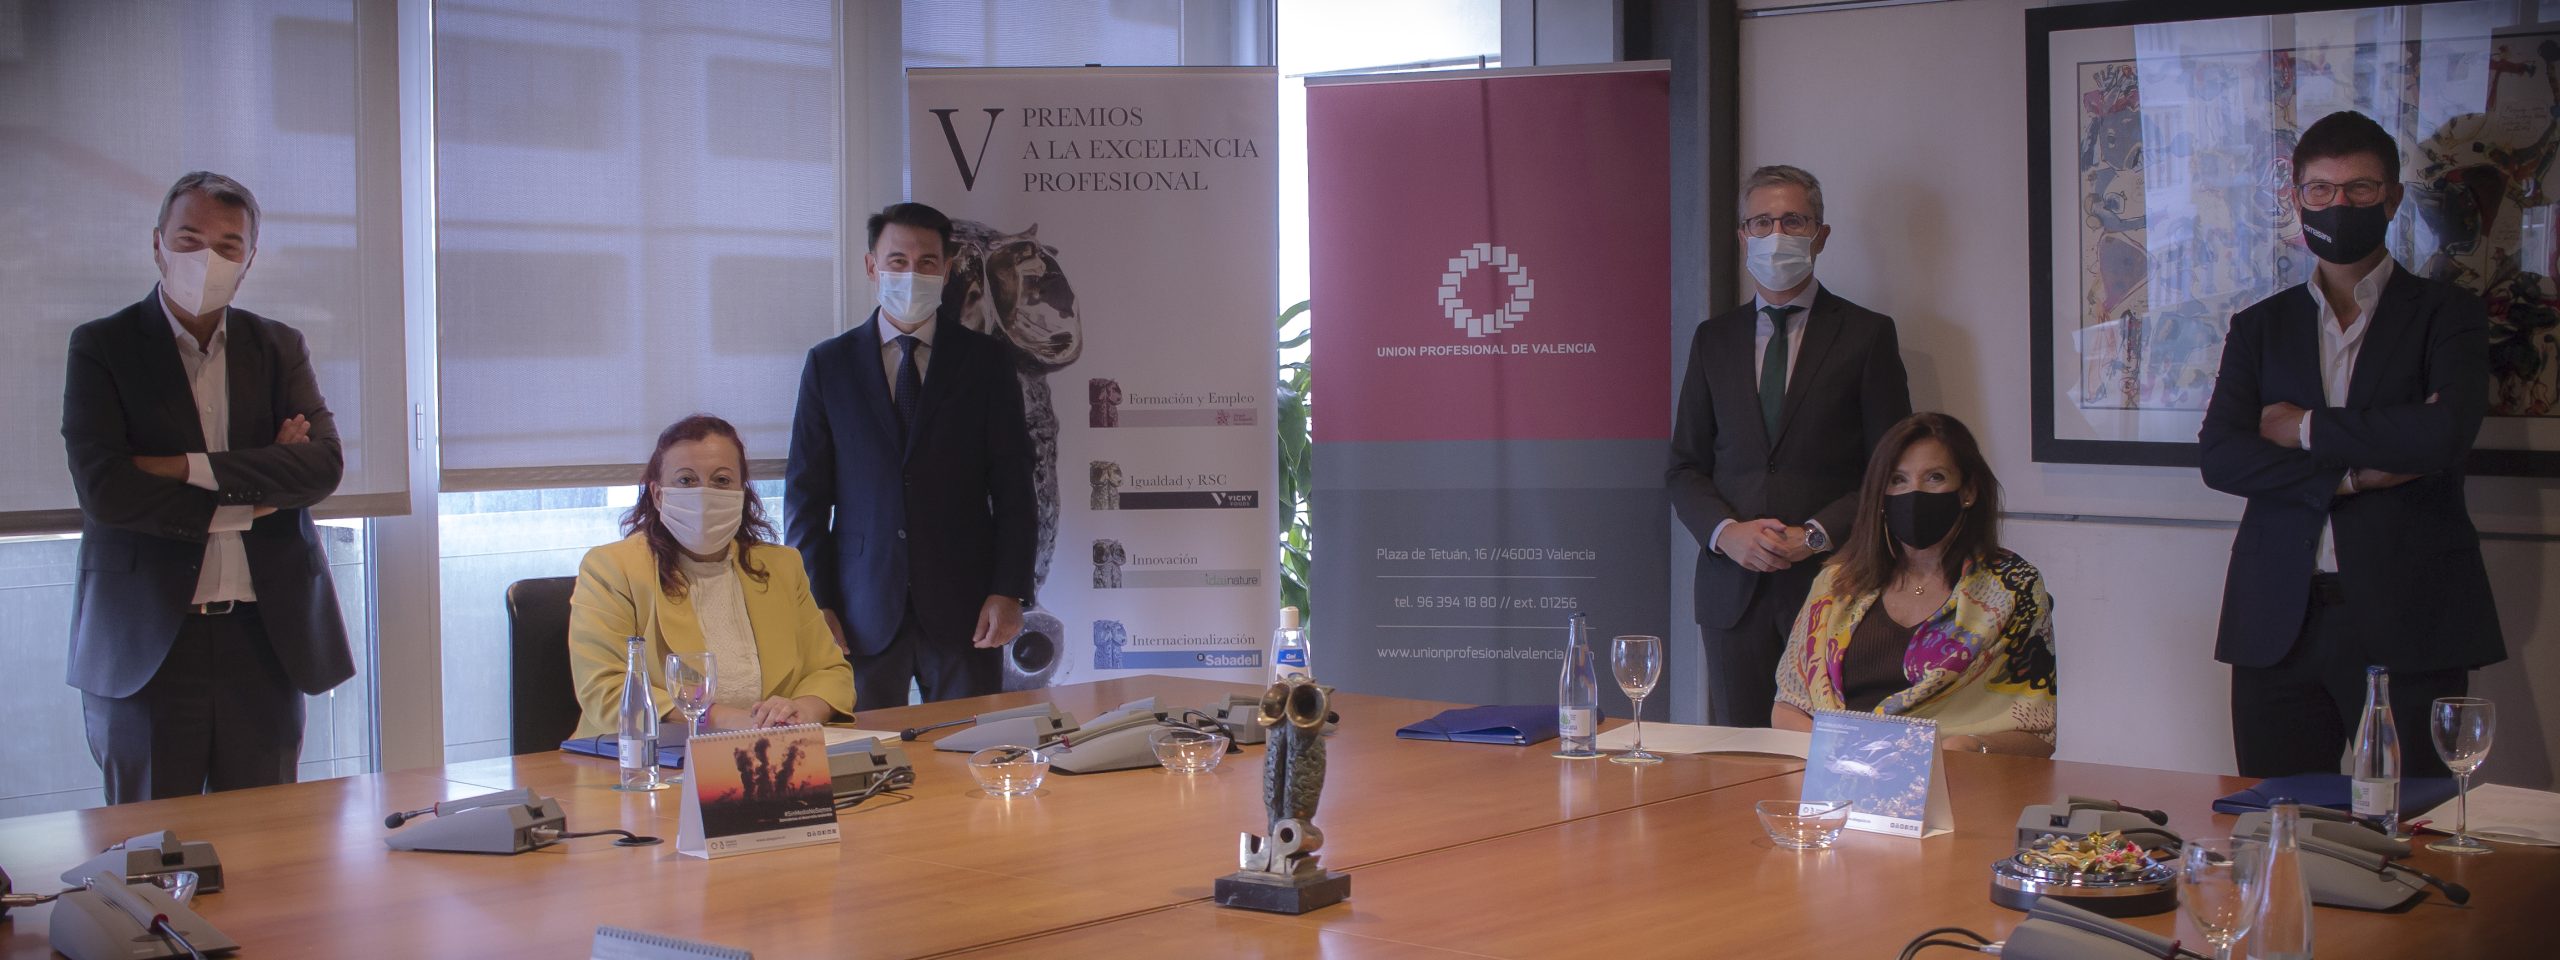 Florida Universitaria, Viktor E. Frankl, Cirugía robótica CV y Valenciaport, ganadores de los V Premios a la Excelencia Profesional